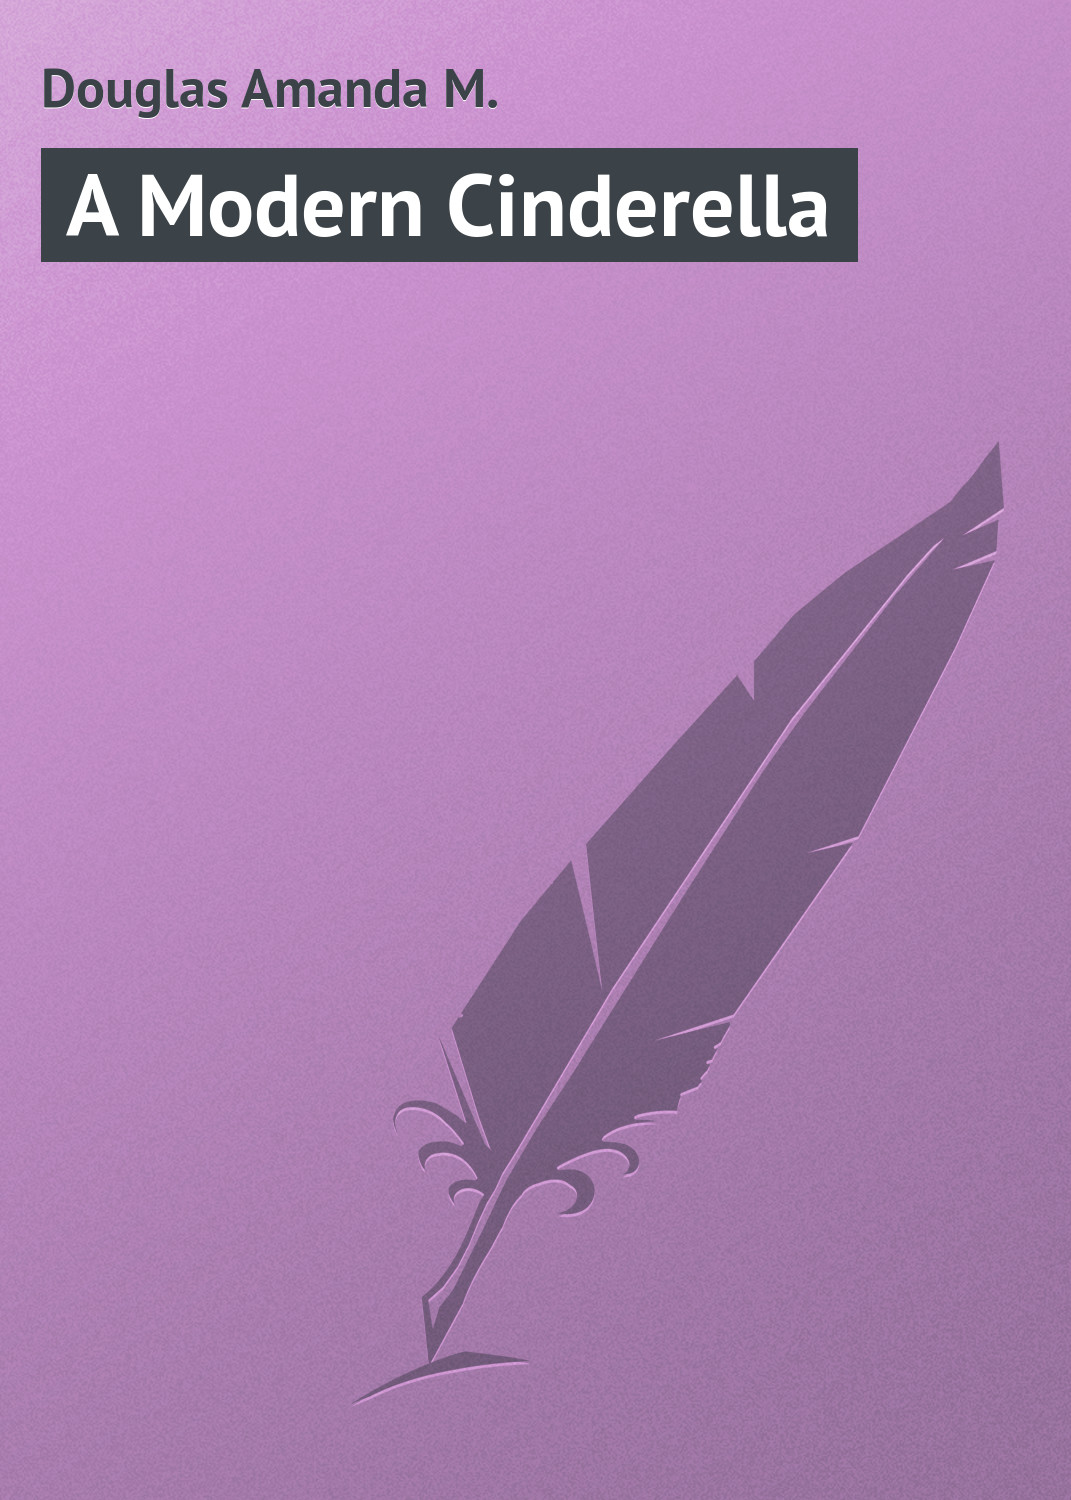 Книга A Modern Cinderella из серии , созданная Amanda Douglas, может относится к жанру Зарубежная классика, Зарубежные детские книги. Стоимость электронной книги A Modern Cinderella с идентификатором 23157331 составляет 5.99 руб.